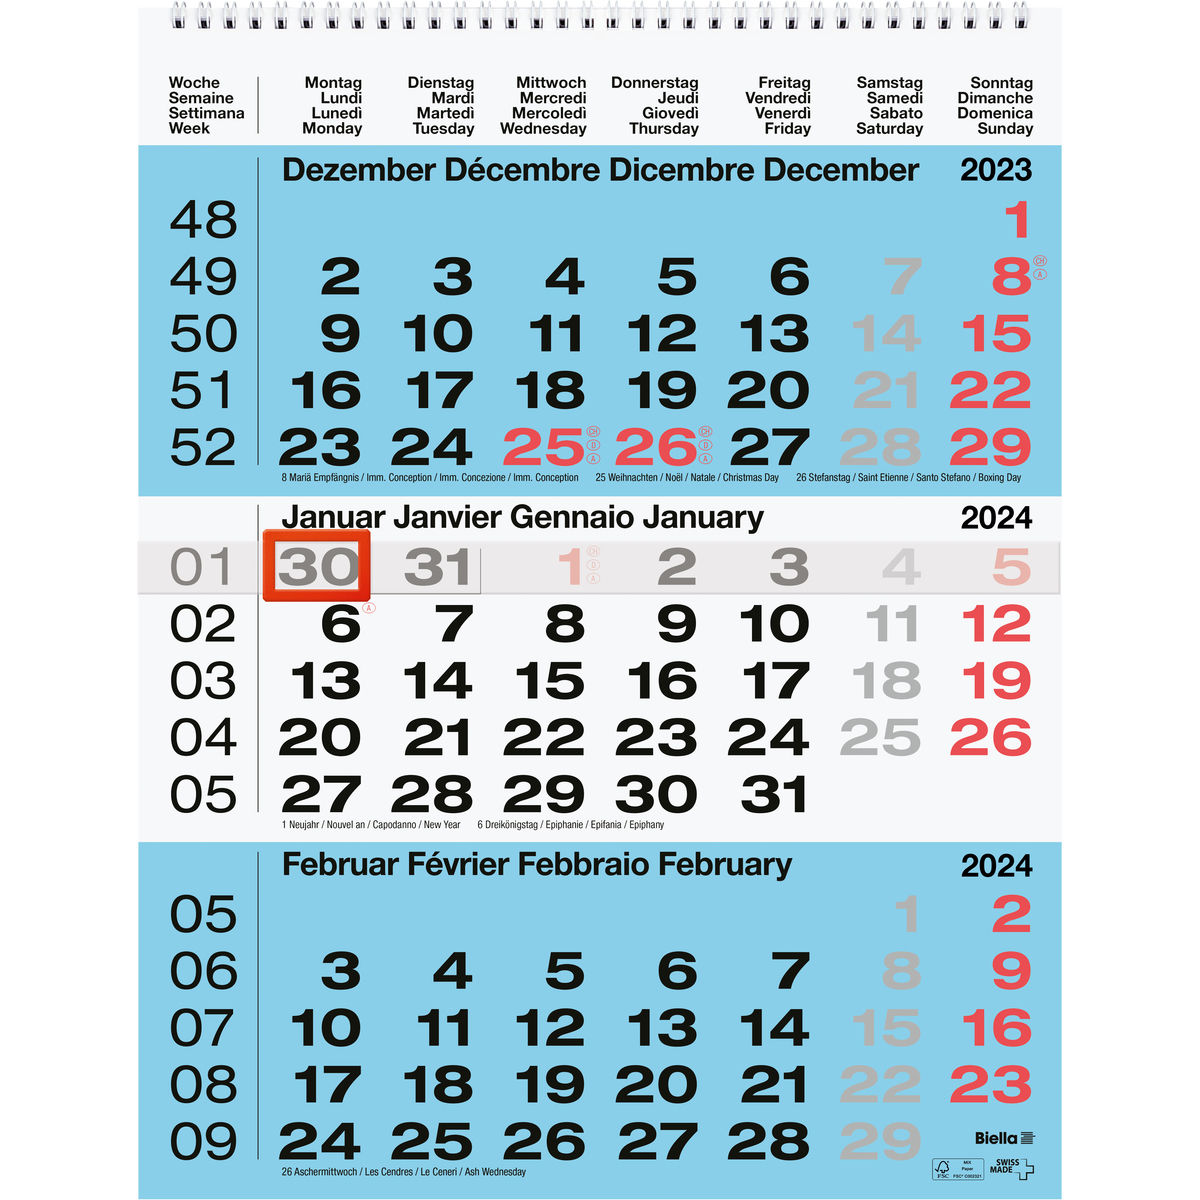 Biella bloc-calendrier 2024 petit